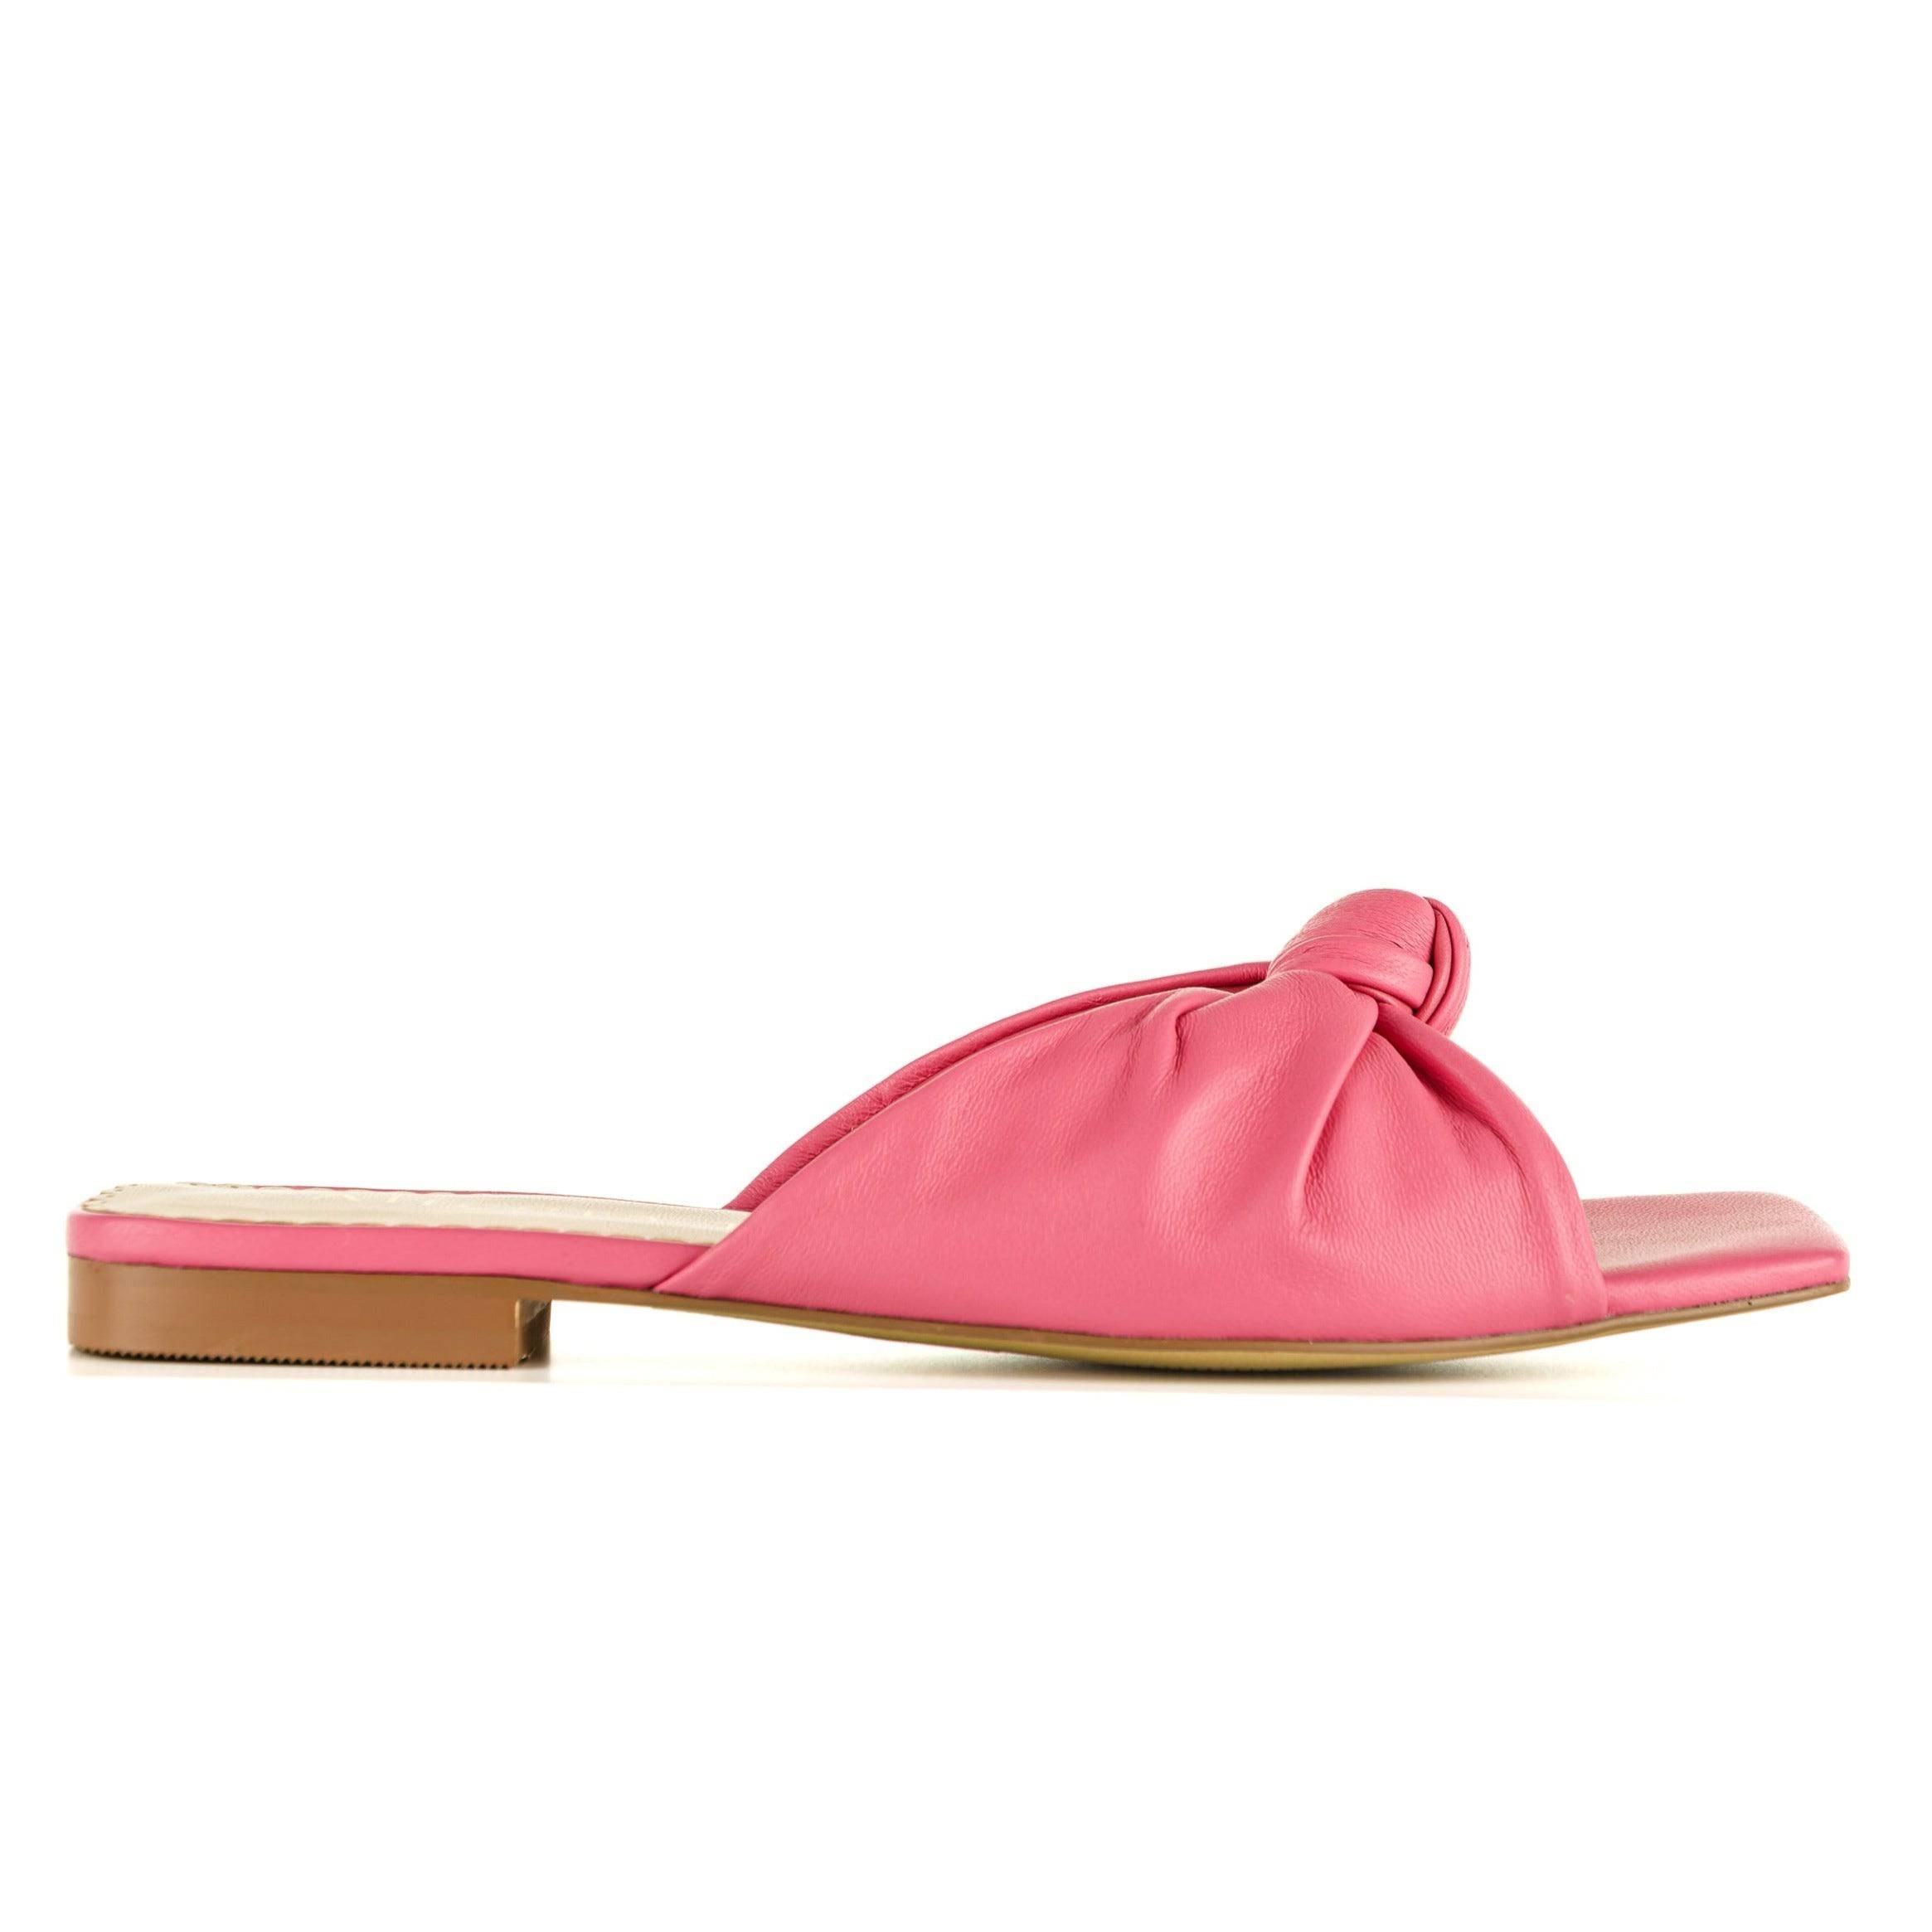 Stylish fuchsia flat slide sandals with luxury lining | Image